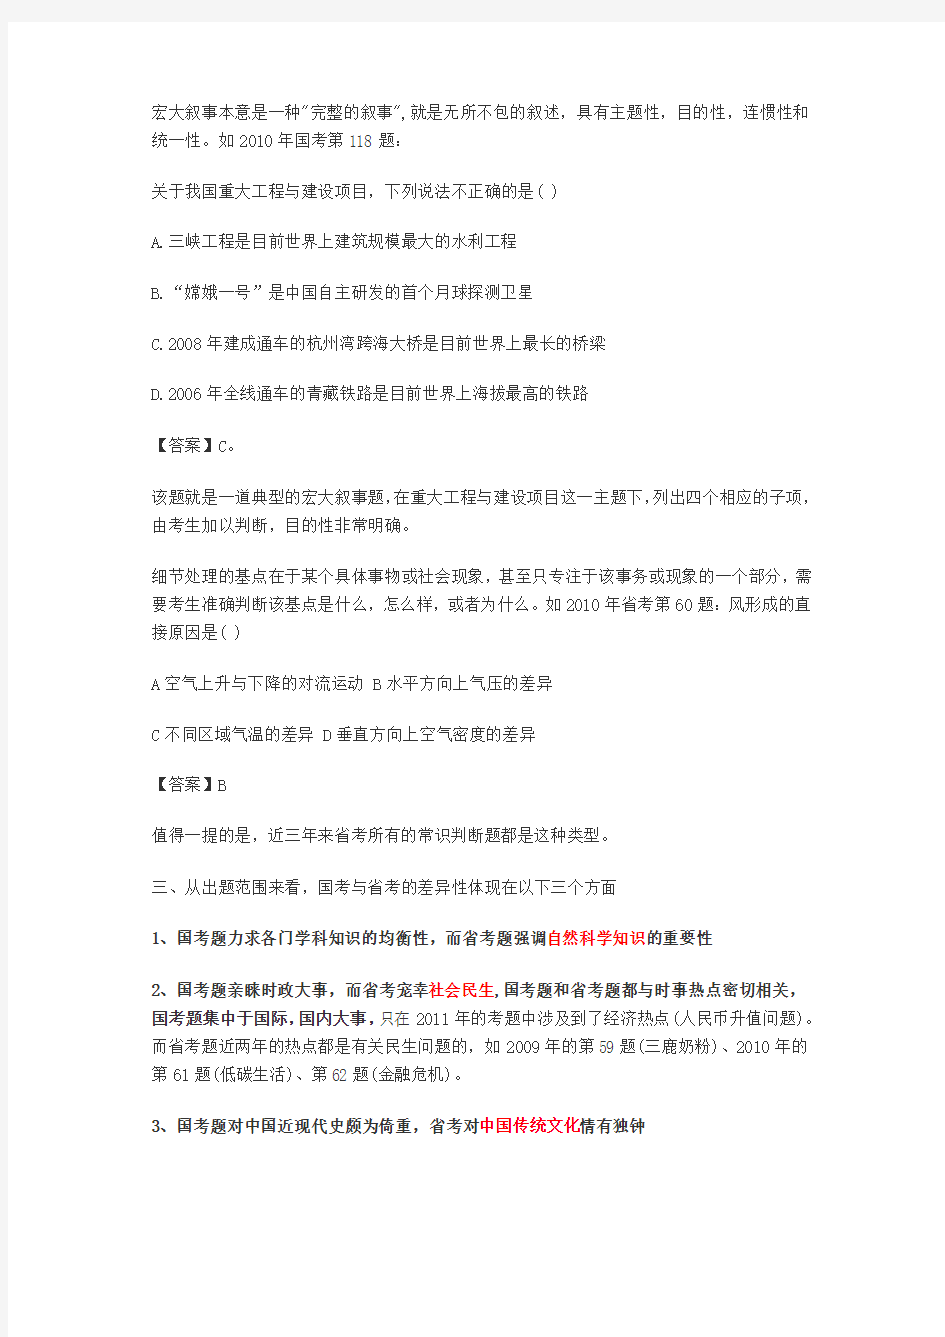 2013年广东省公务员考试行测国考省考常识题目的区别